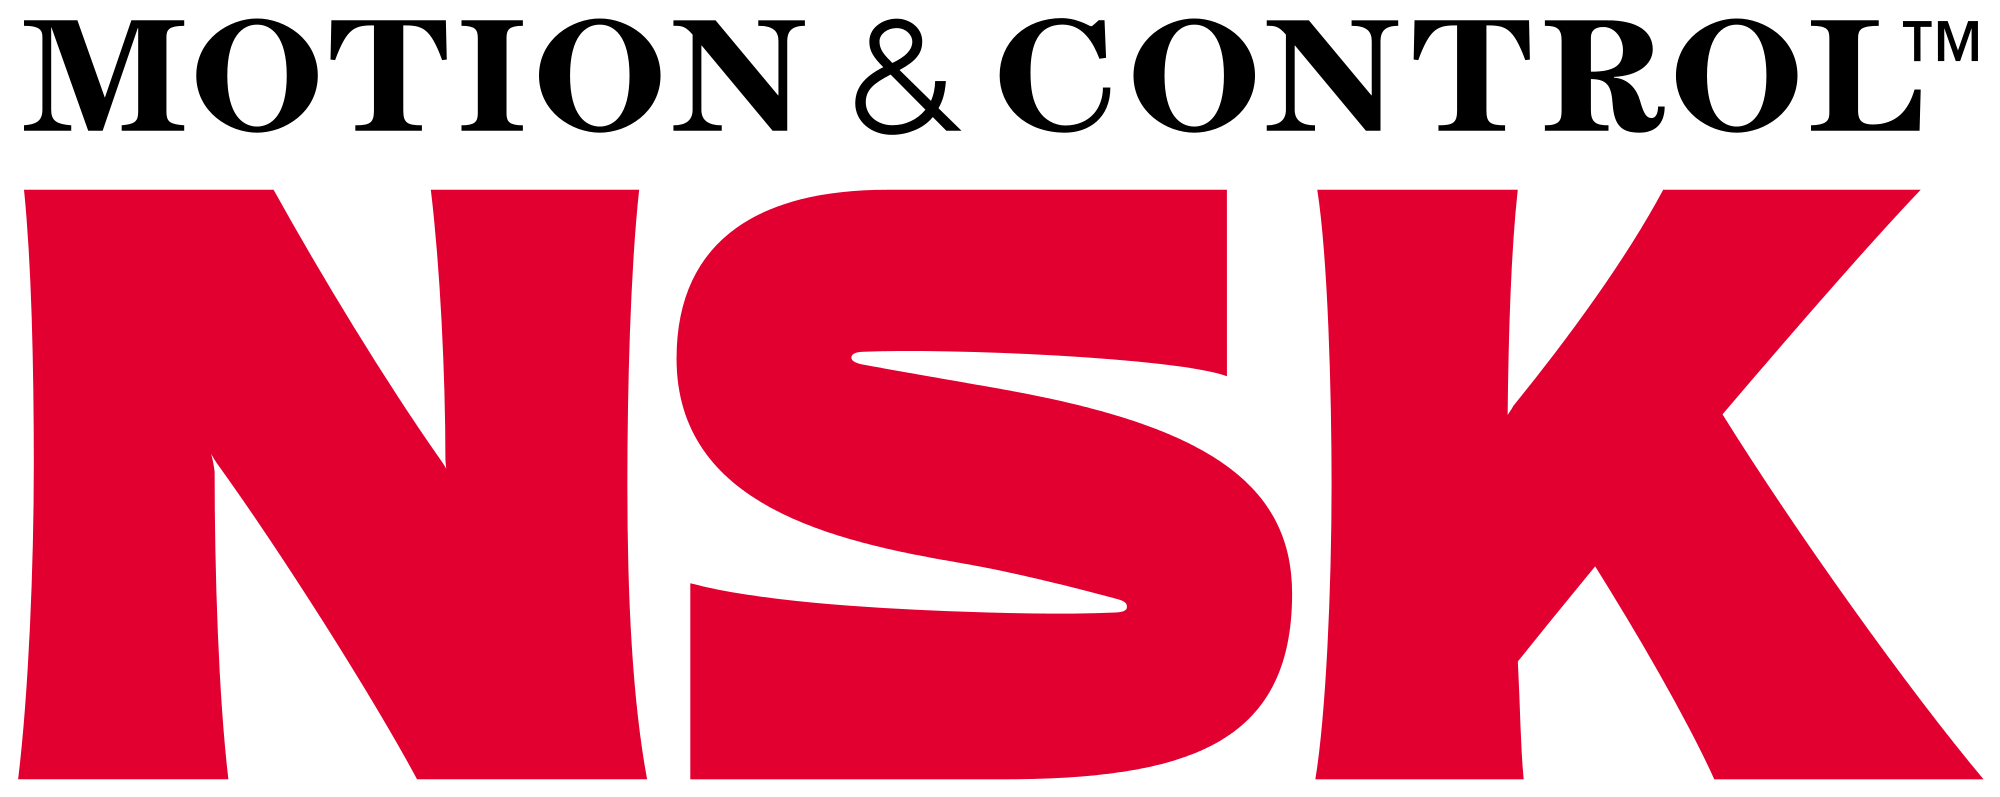 Logo NSK